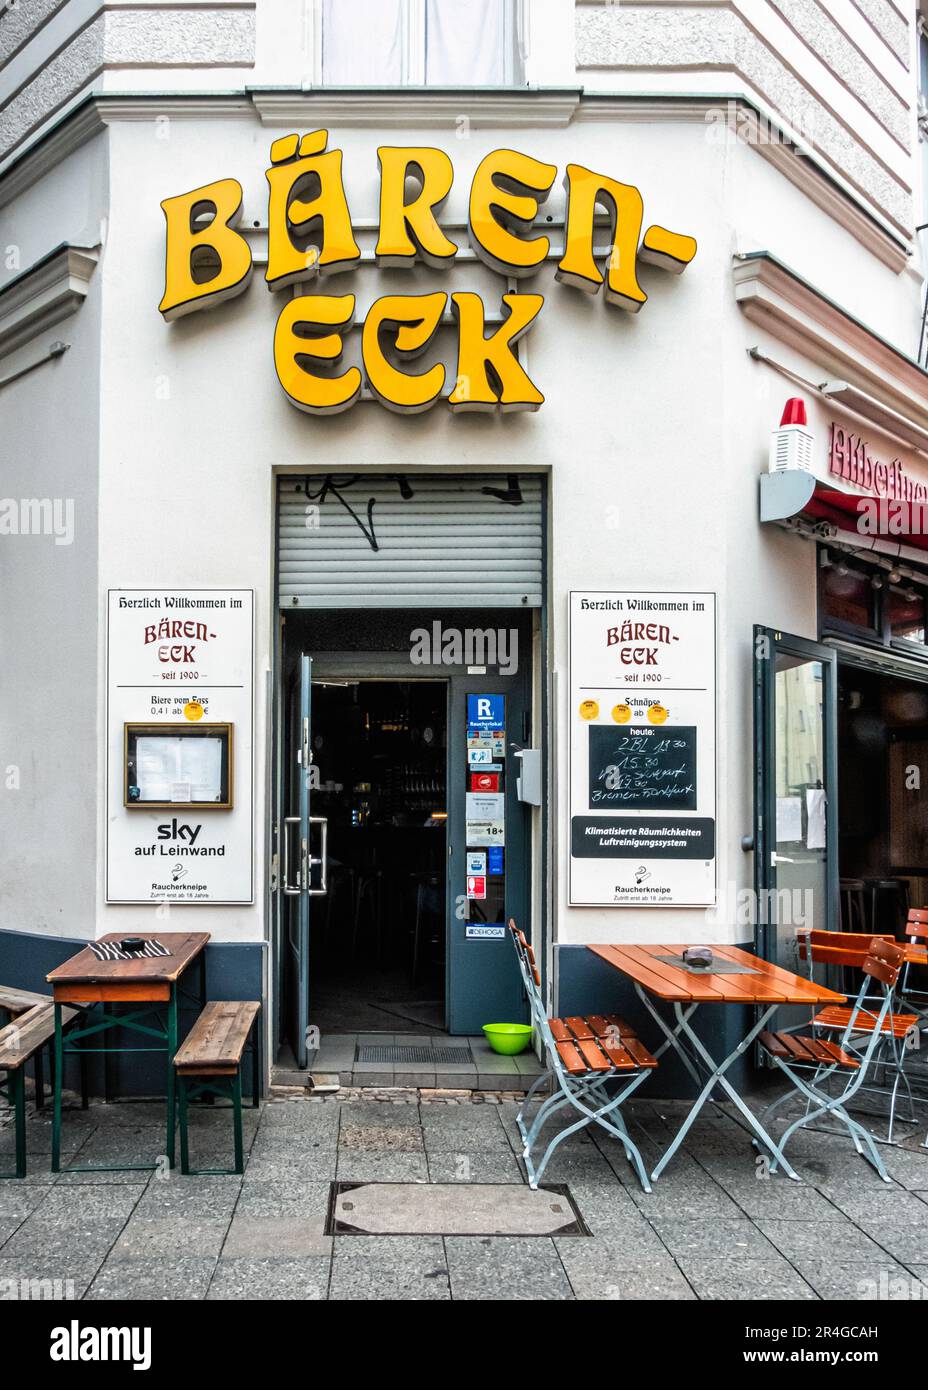 Bären-Eck,Traditional old pub, Hermannstrasse 37, Neukölln, Berlin, Germany Stock Photo